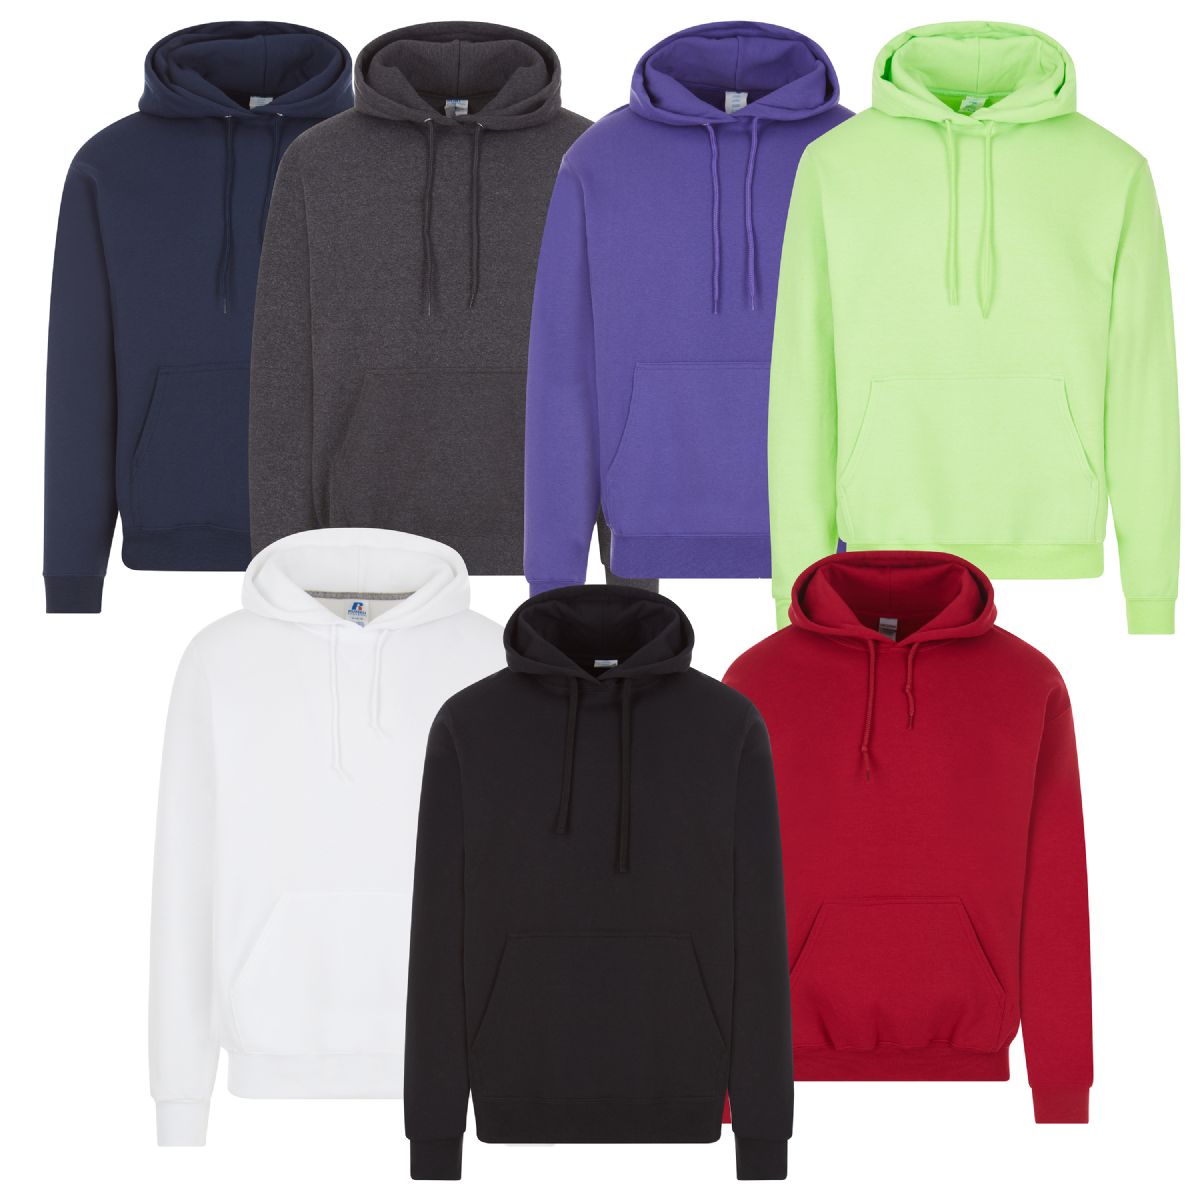 24 Pieces of Unisex Irregular Cotton Hoodie Sweatshirt In Assorted Colors 3xlarge